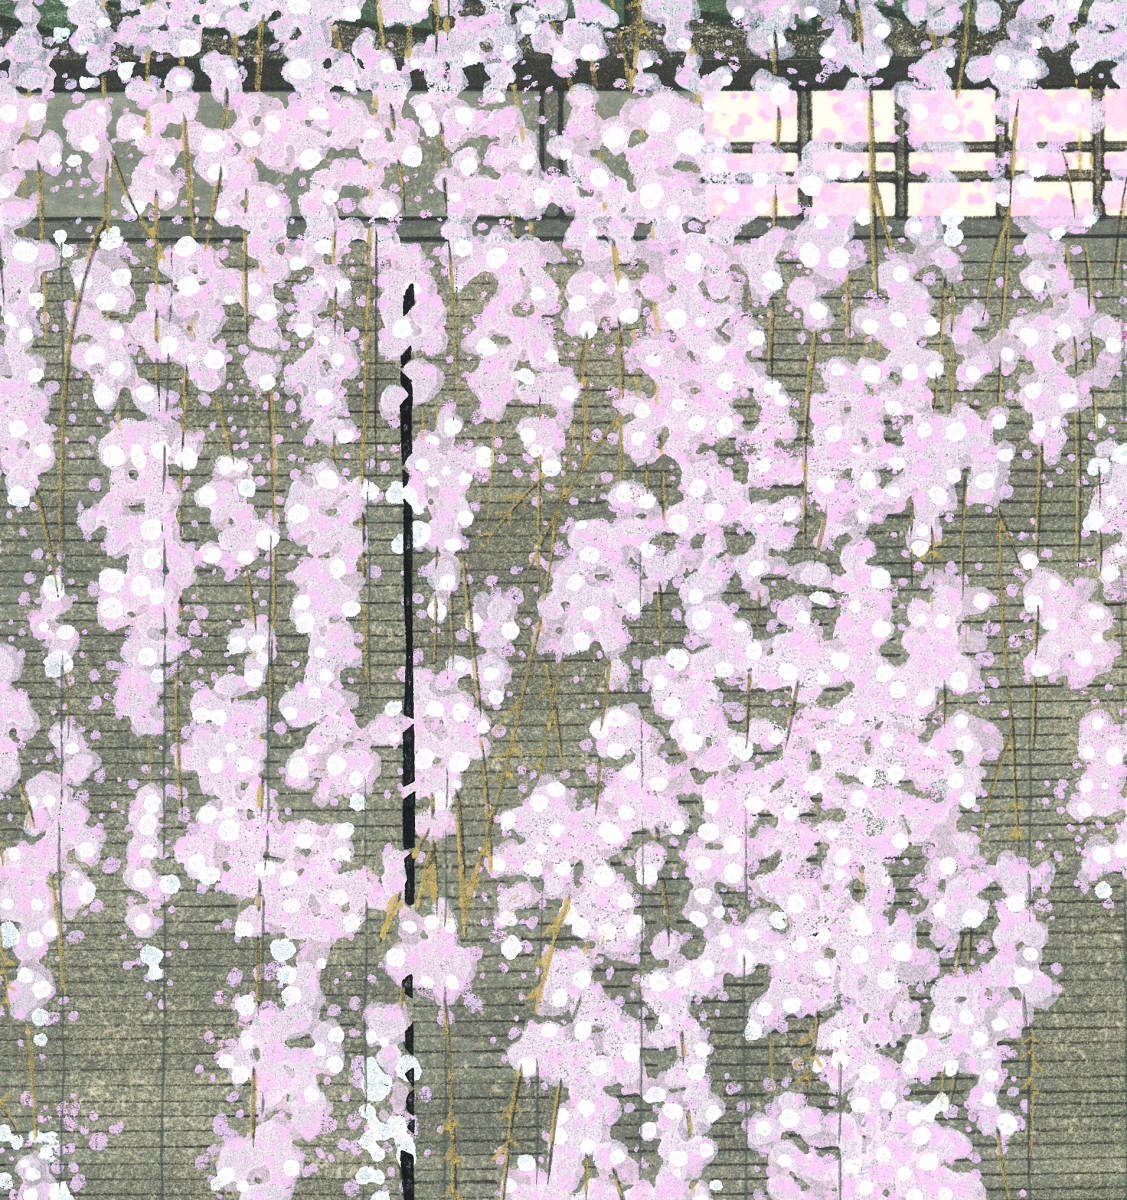 加藤晃秀 (Kato Teruhide) 木版画 No.001 桜の譜 初版1989～ ポスト